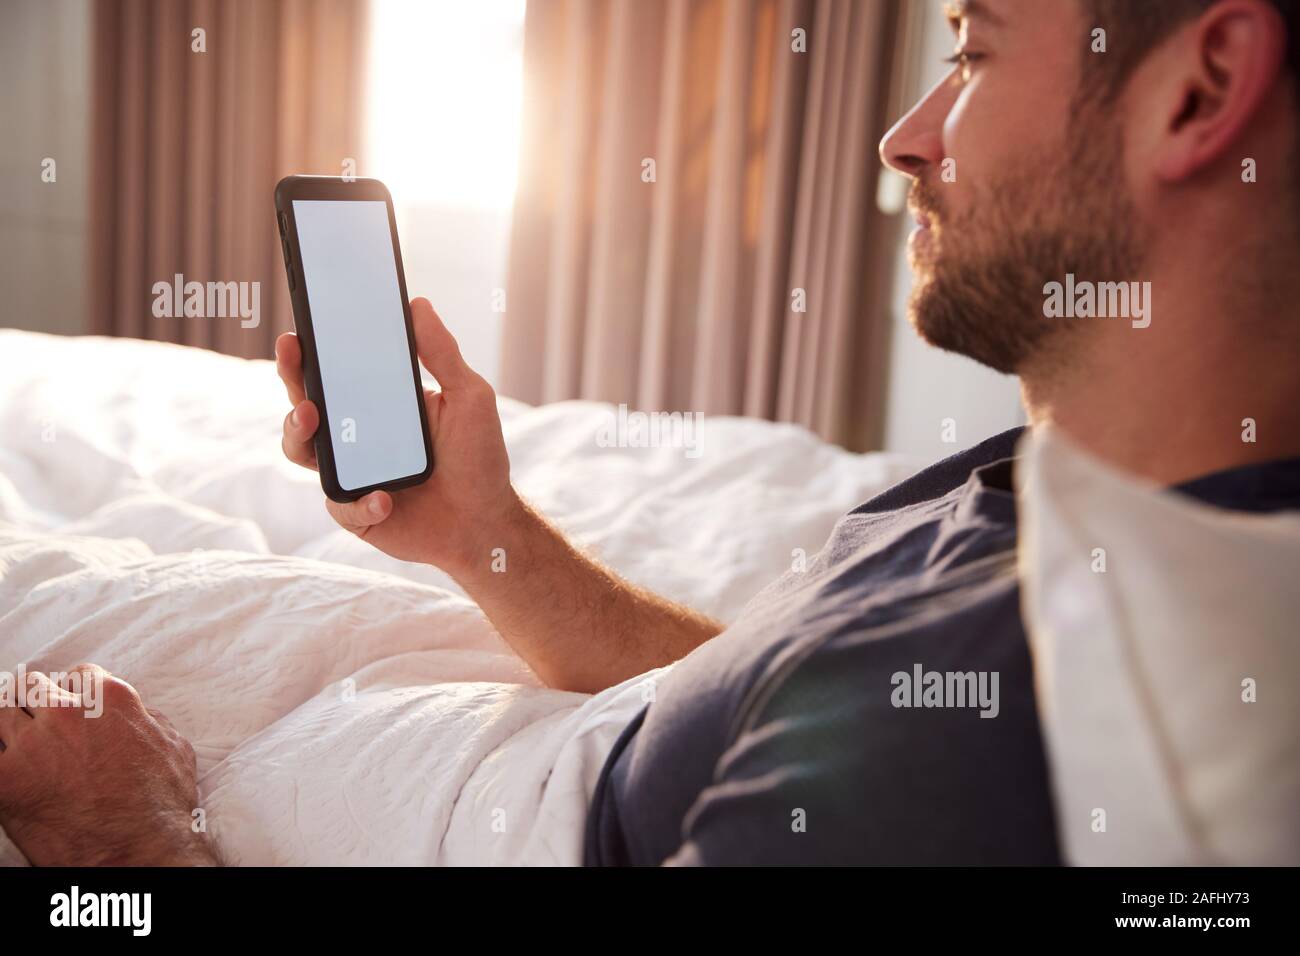 Mann sitzt im Bett am Handy suchen, nachdem sie aufgewacht Stockfoto